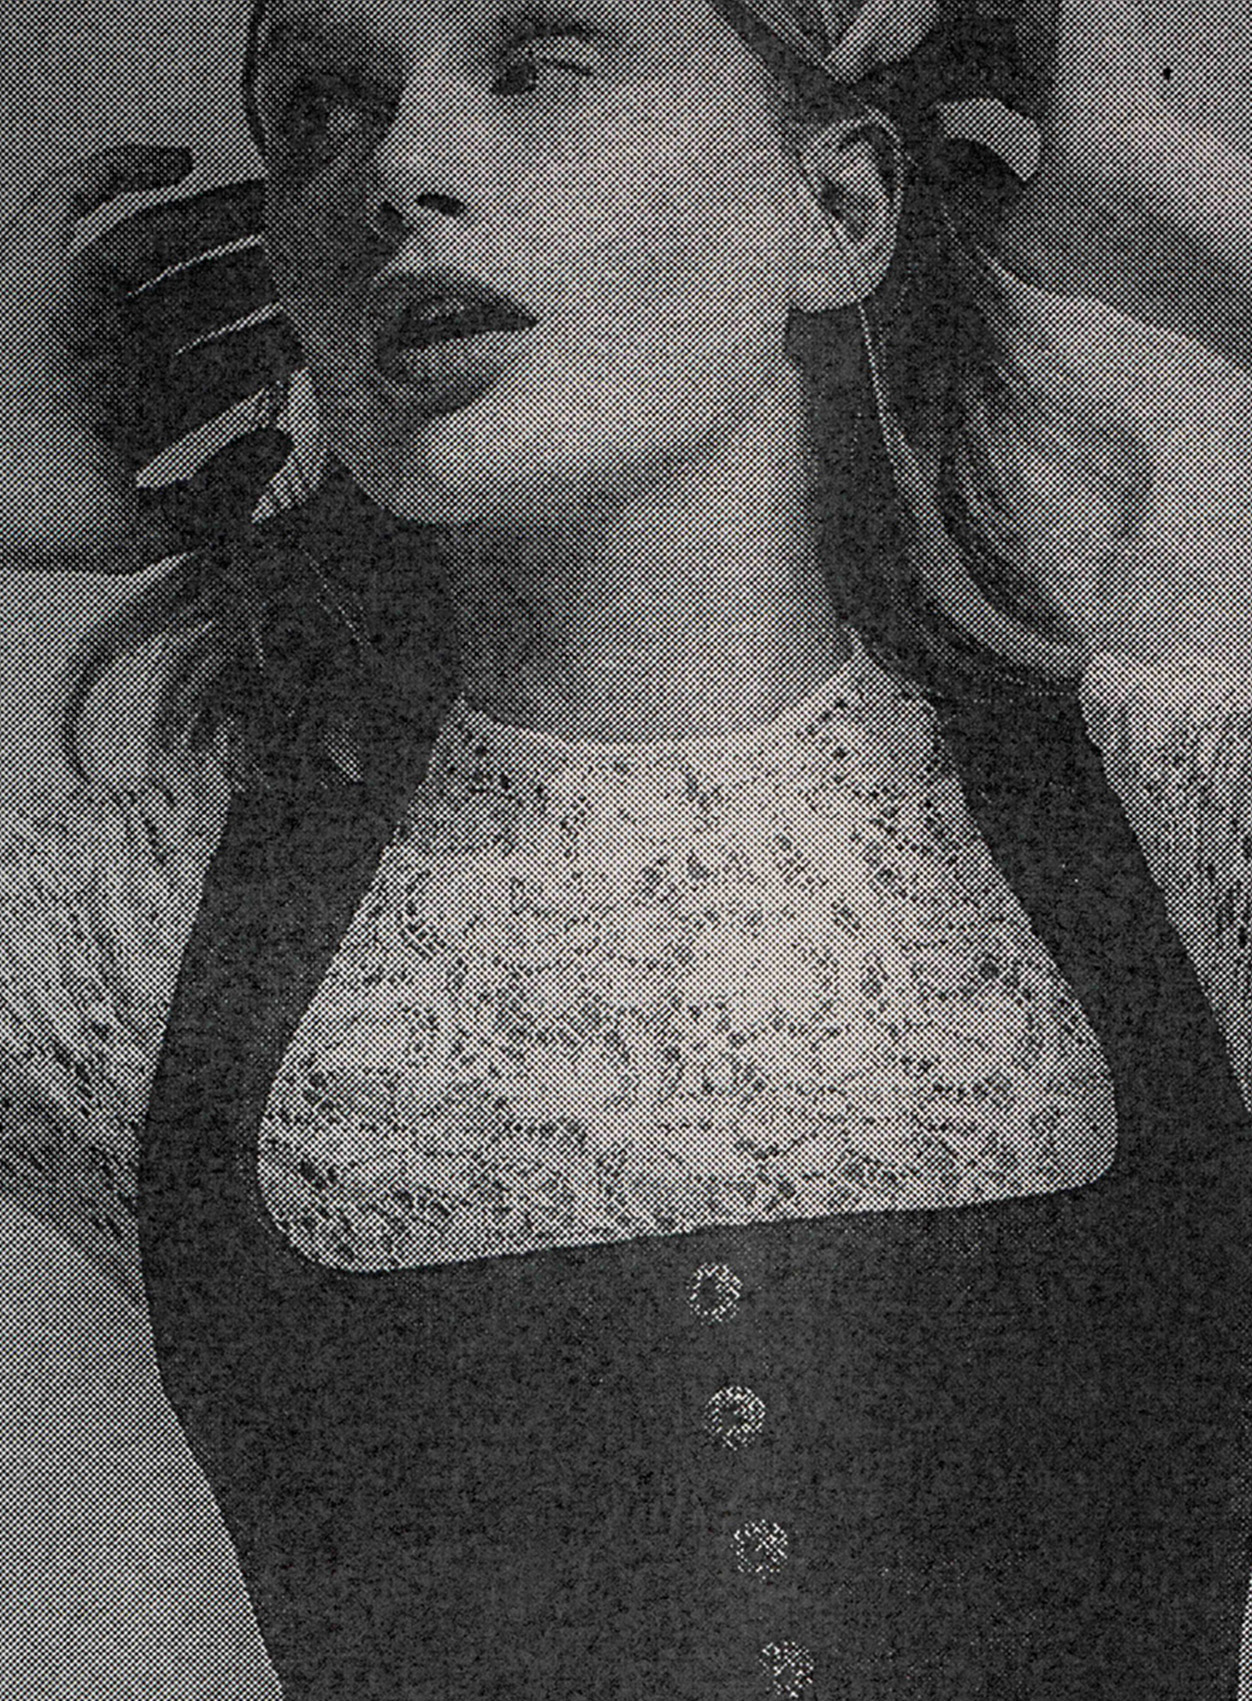 Frauenmodel in hochgeschlossener Spitzenbluse und Dirndl in schwarz weiß